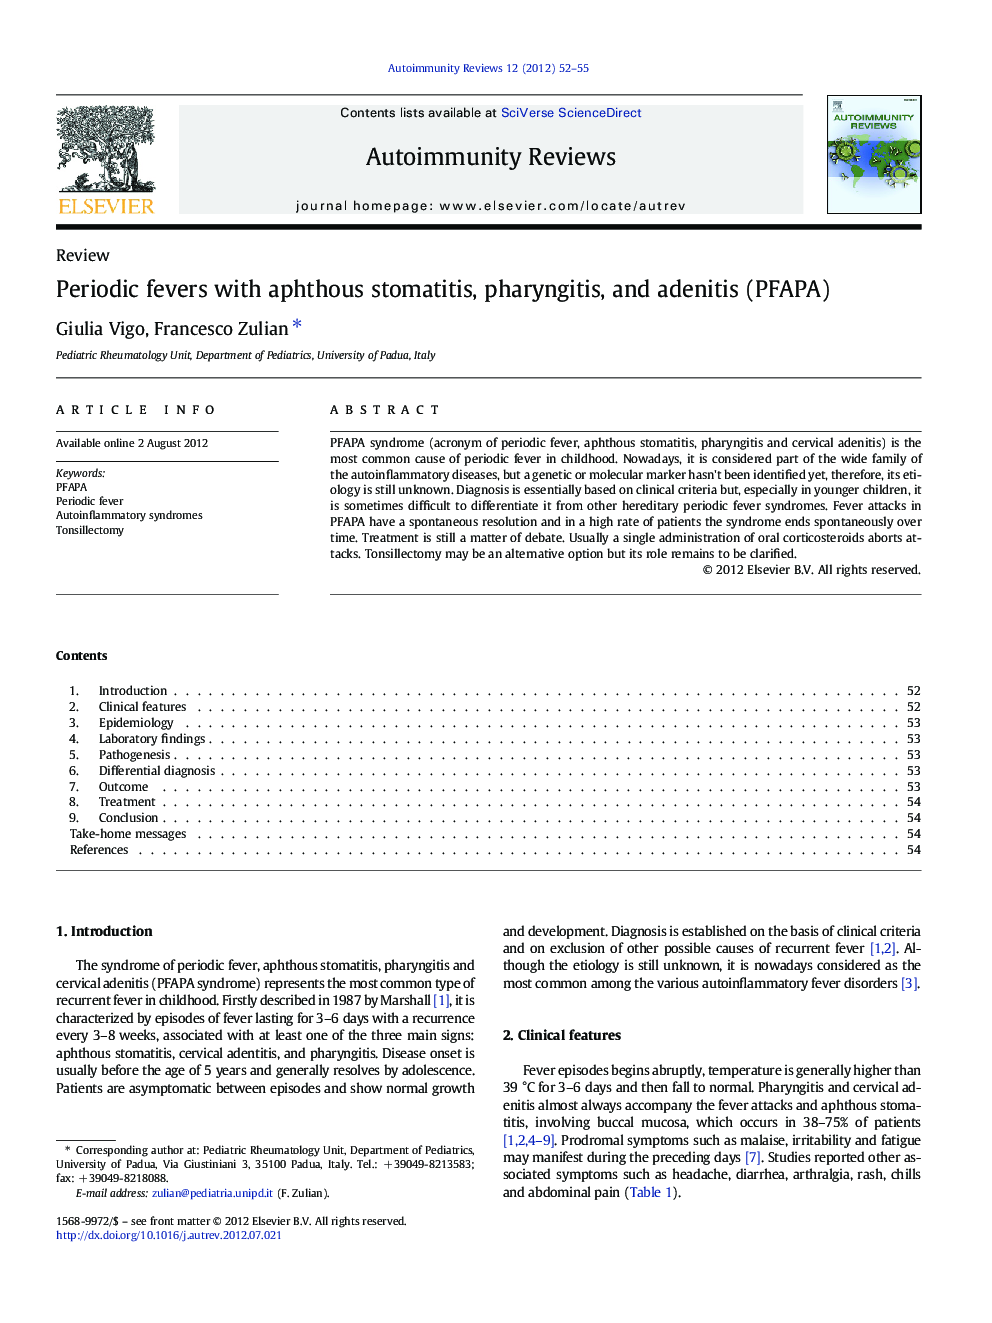 Periodic fevers with aphthous stomatitis, pharyngitis, and adenitis (PFAPA)